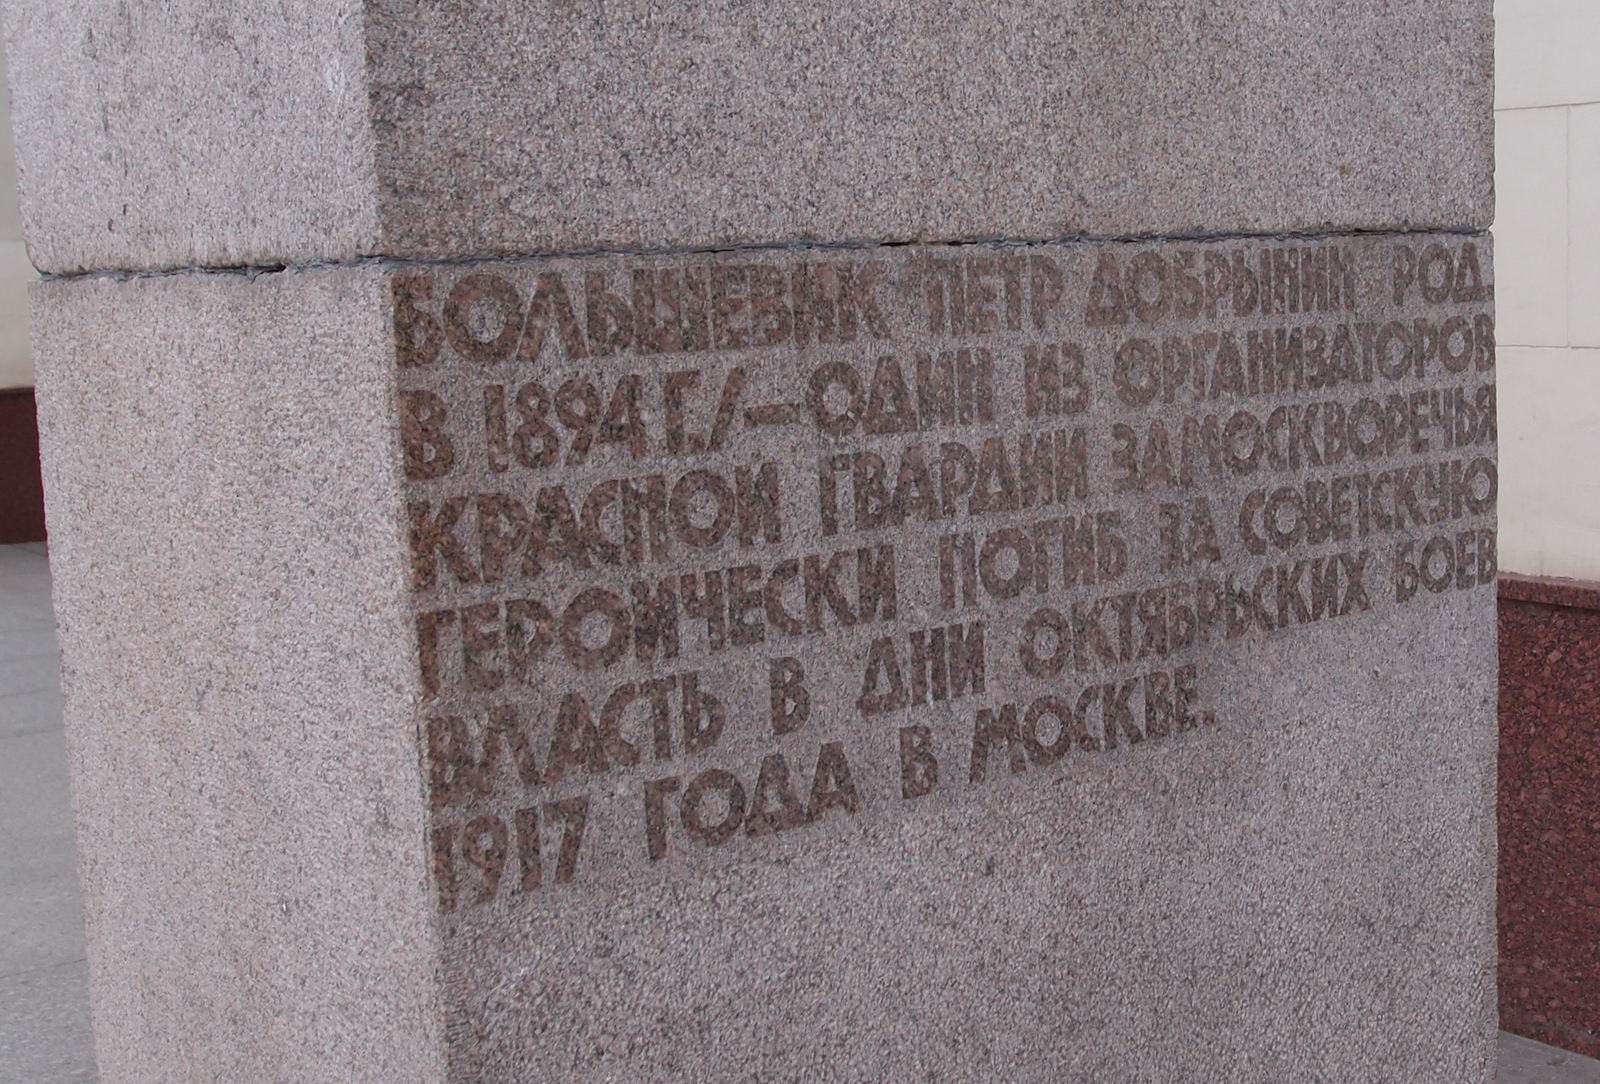 Памятник Добрынину П.Г. (1895-1917), ск. Г.Д.Распопов, арх. В.М.Пясковский, на Серпуховской площади у вестибюля станции метро «Добрынинская», открыт в 1967.